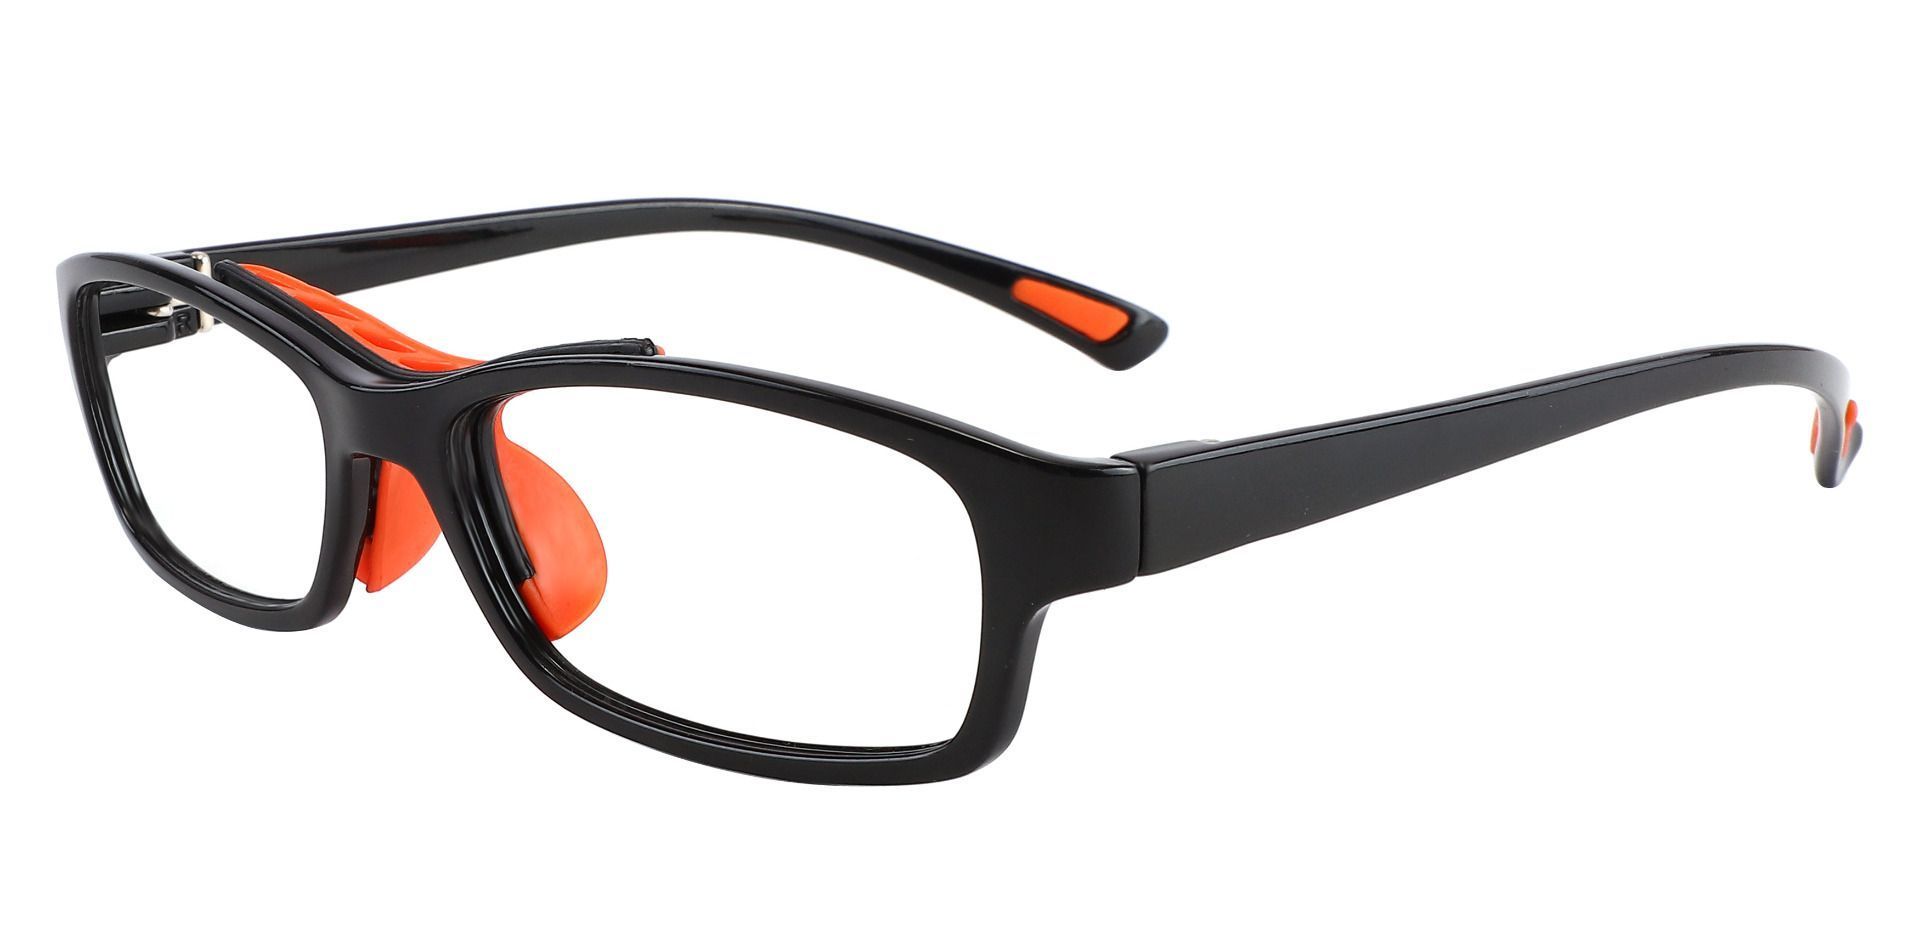 Glynn Rectangle Progressive Glasses - Black